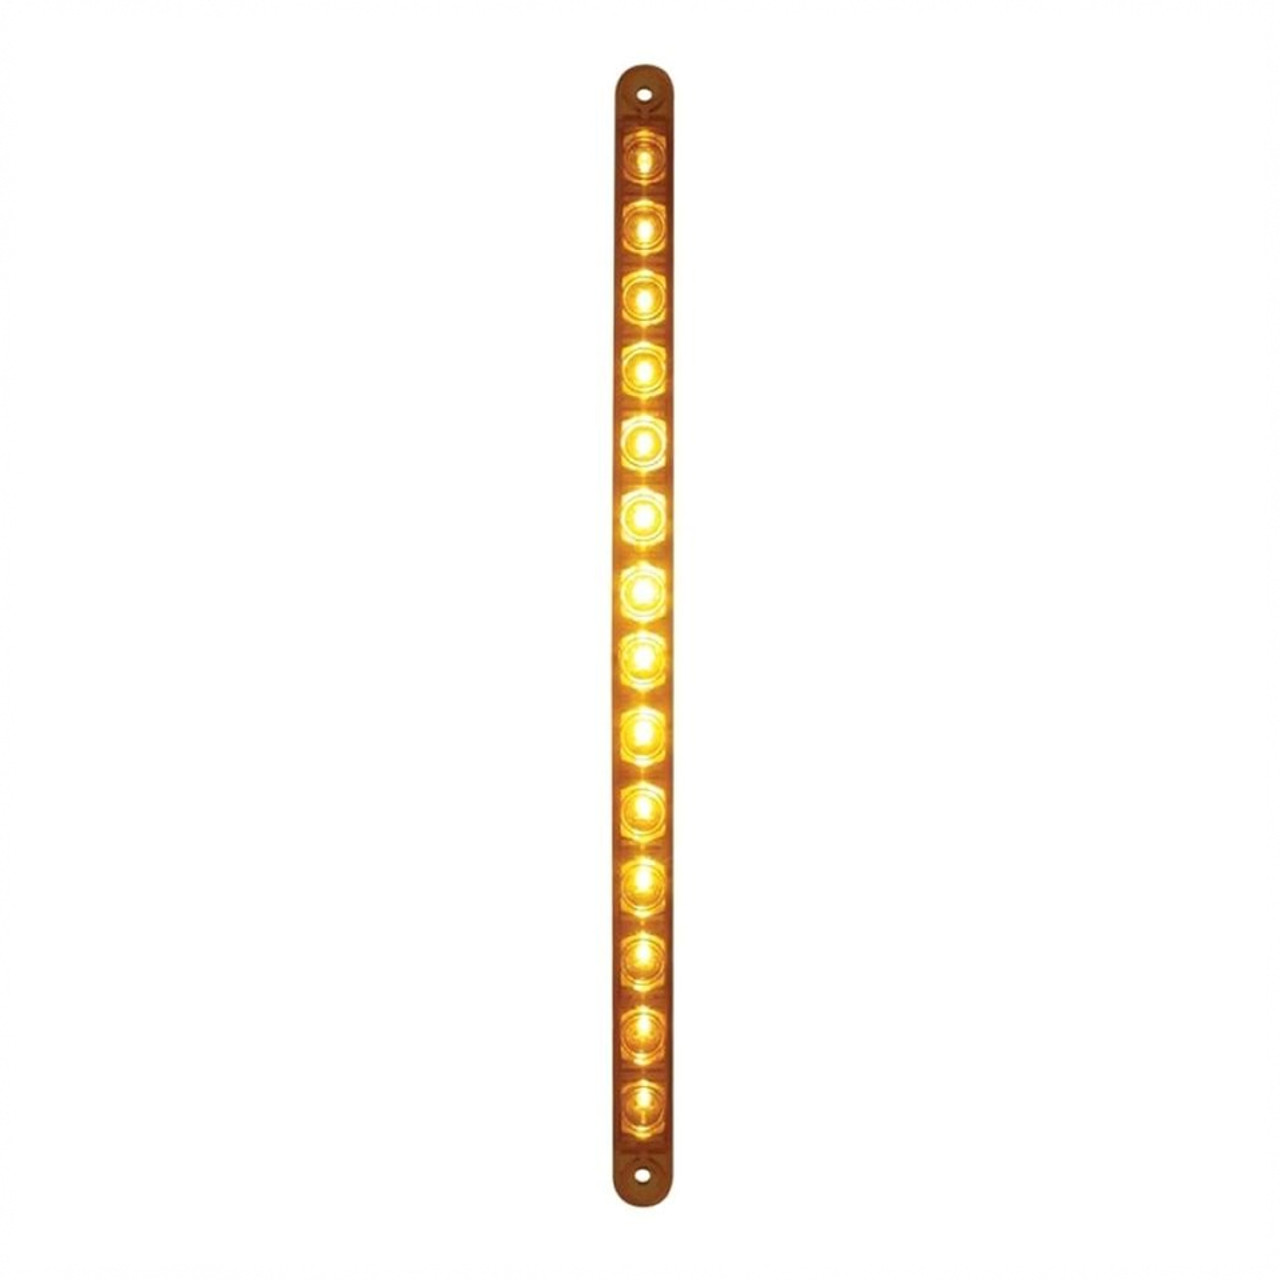 14 LED 12" Turn Signal Light Bar - Amber LED/Amber Lens